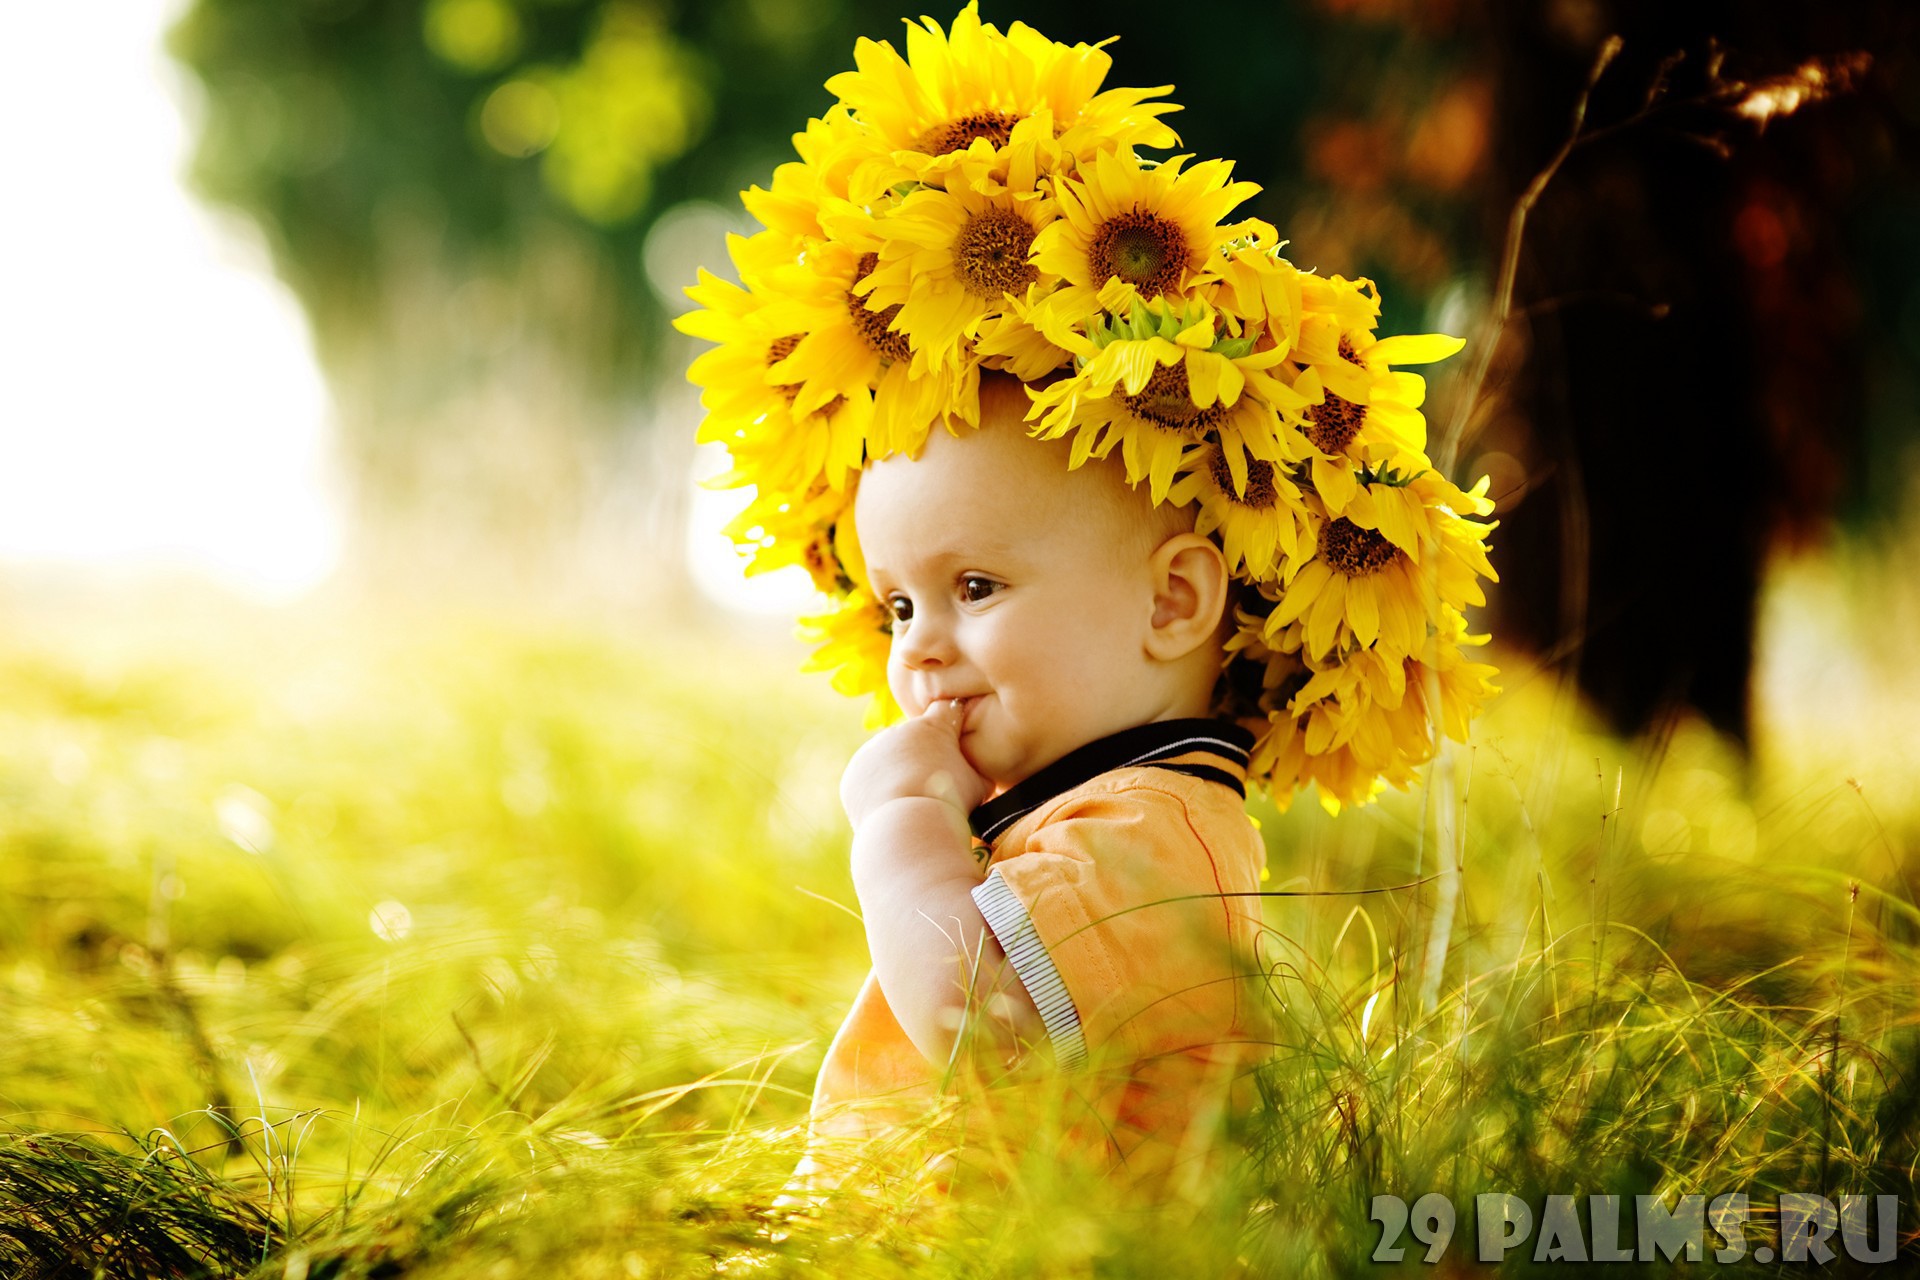 Мама солнышко мое я подсолнушек ее. Дети с цветами. Дети солнца. Дети цветы жизни. Солнце дети радость.